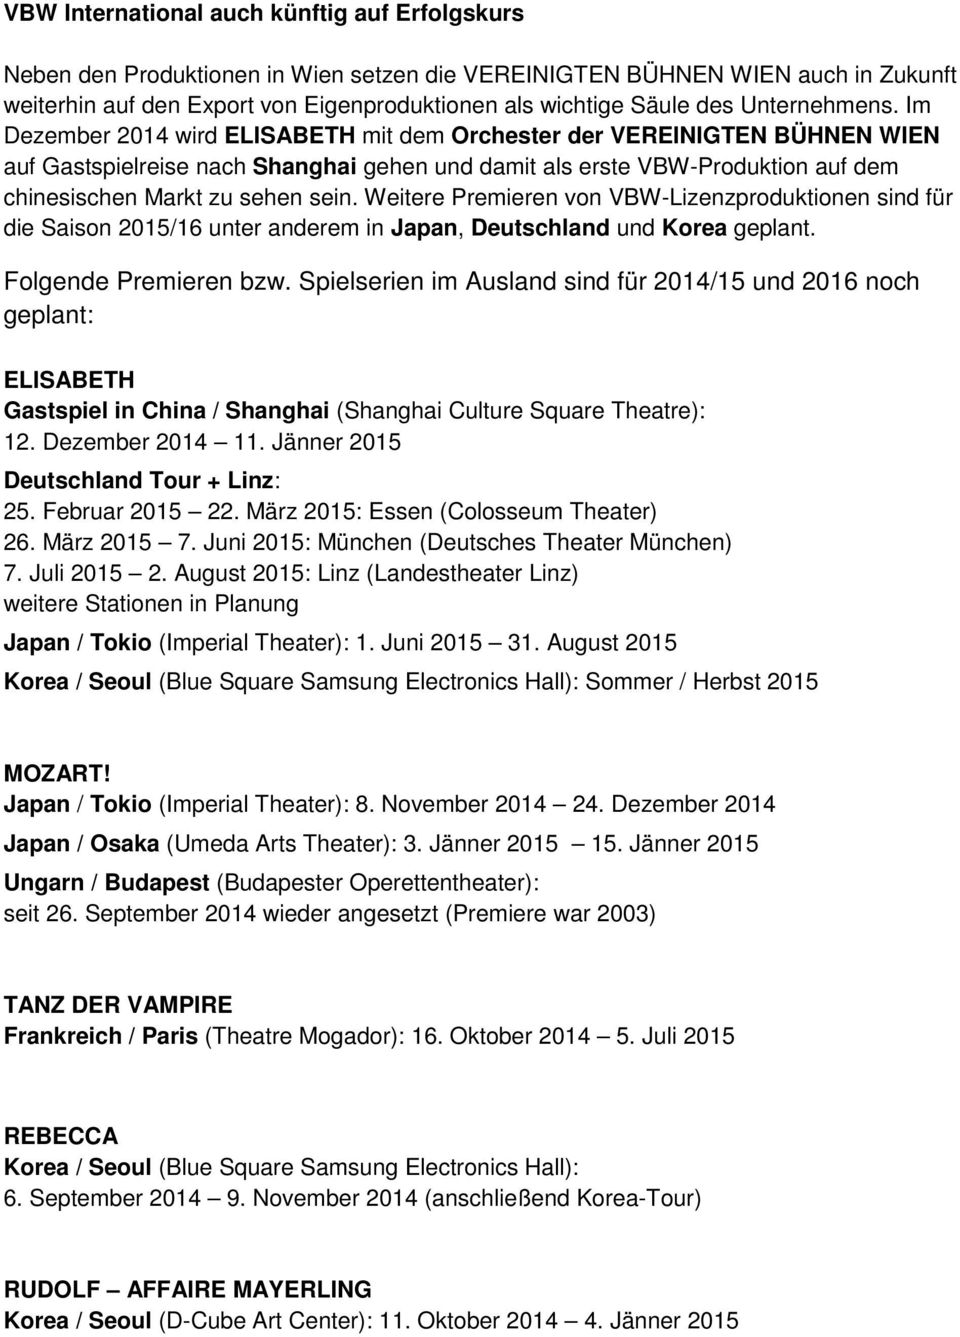 Im Dezember 2014 wird ELISABETH mit dem Orchester der VEREINIGTEN BÜHNEN WIEN auf Gastspielreise nach Shanghai gehen und damit als erste VBW-Produktion auf dem chinesischen Markt zu sehen sein.